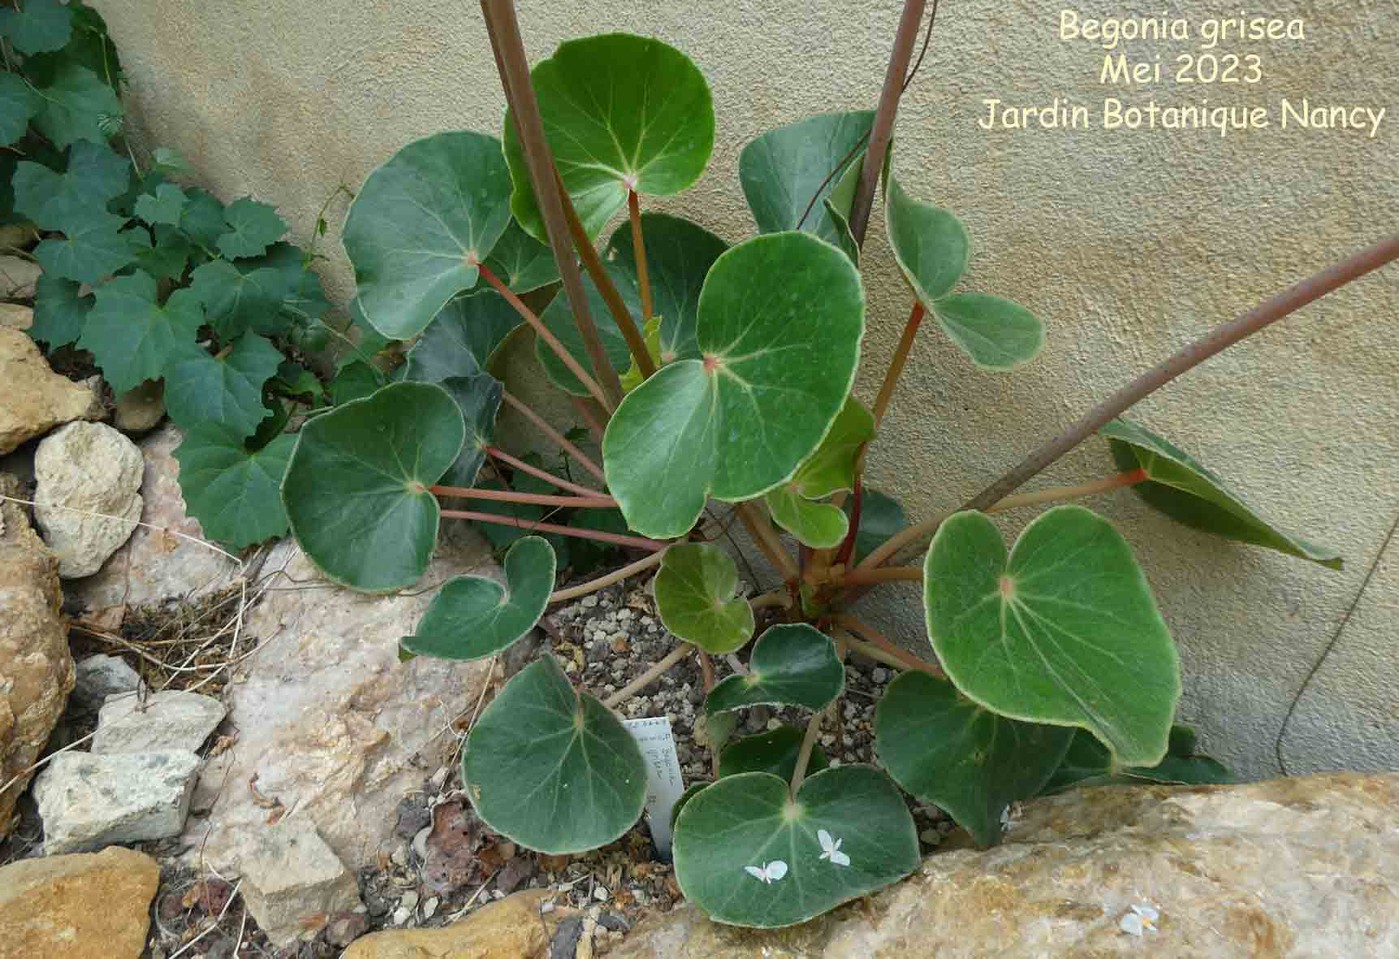 Begonia grisea